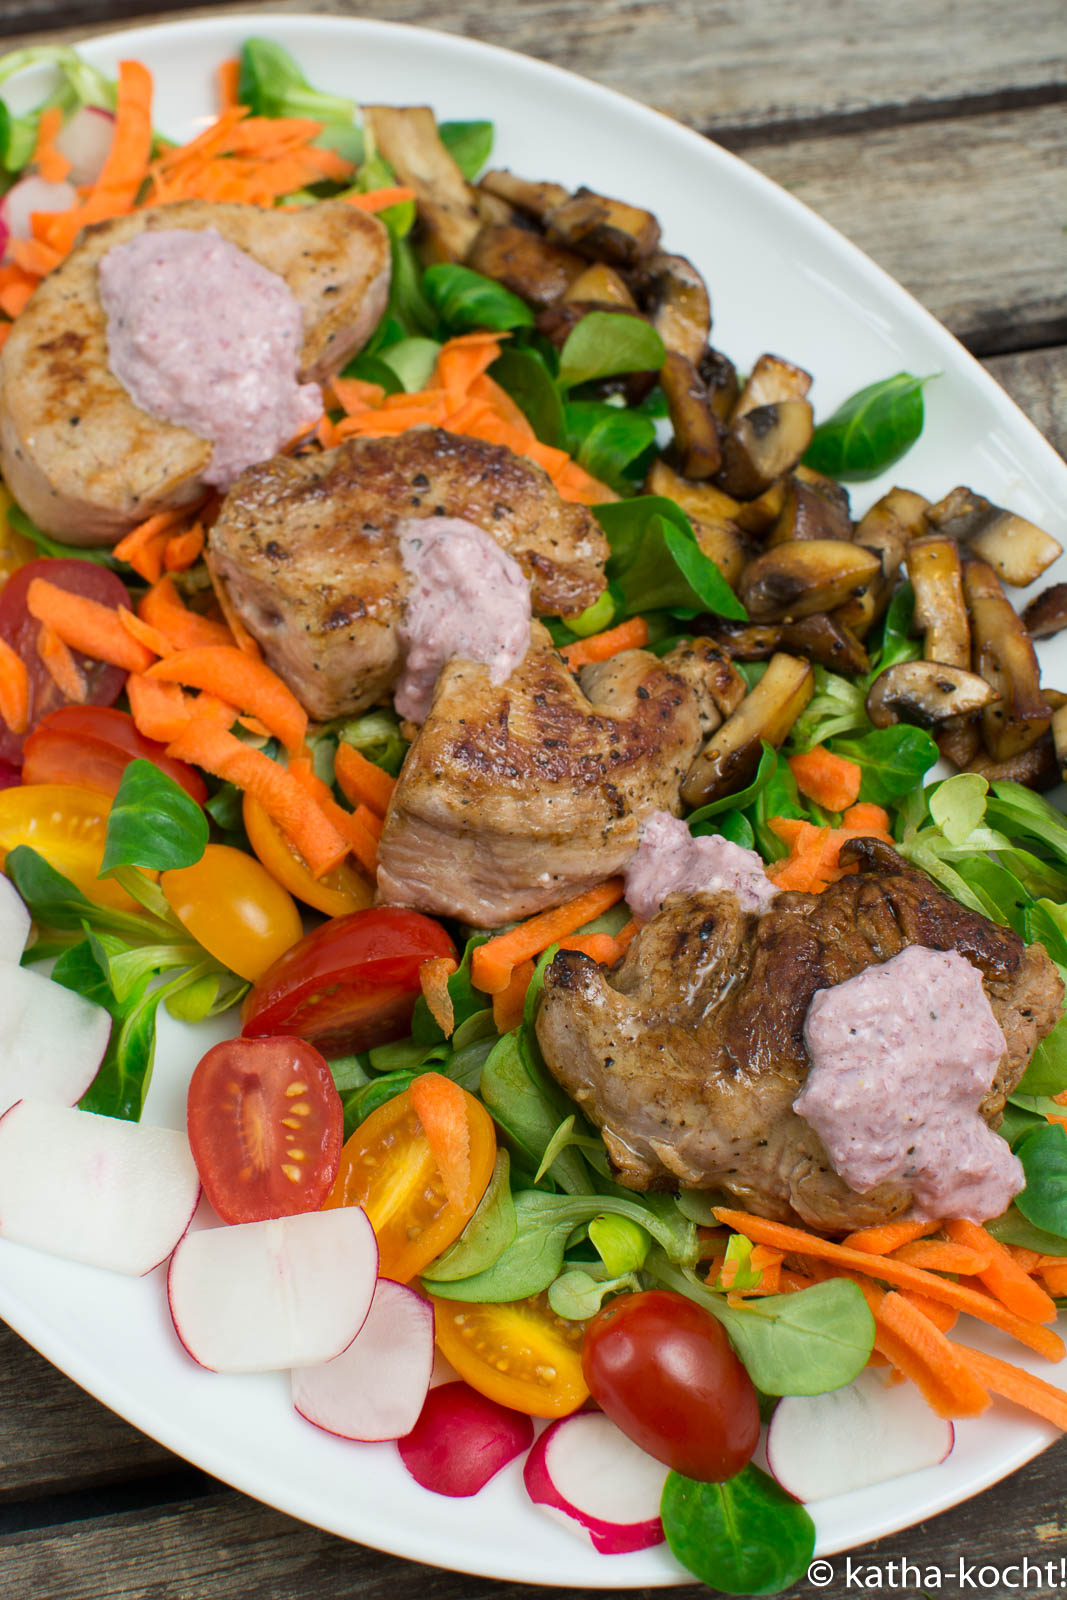 Schweinemedaillons mit Pilzen und rotem Dressing auf Salat - Katha-kocht!